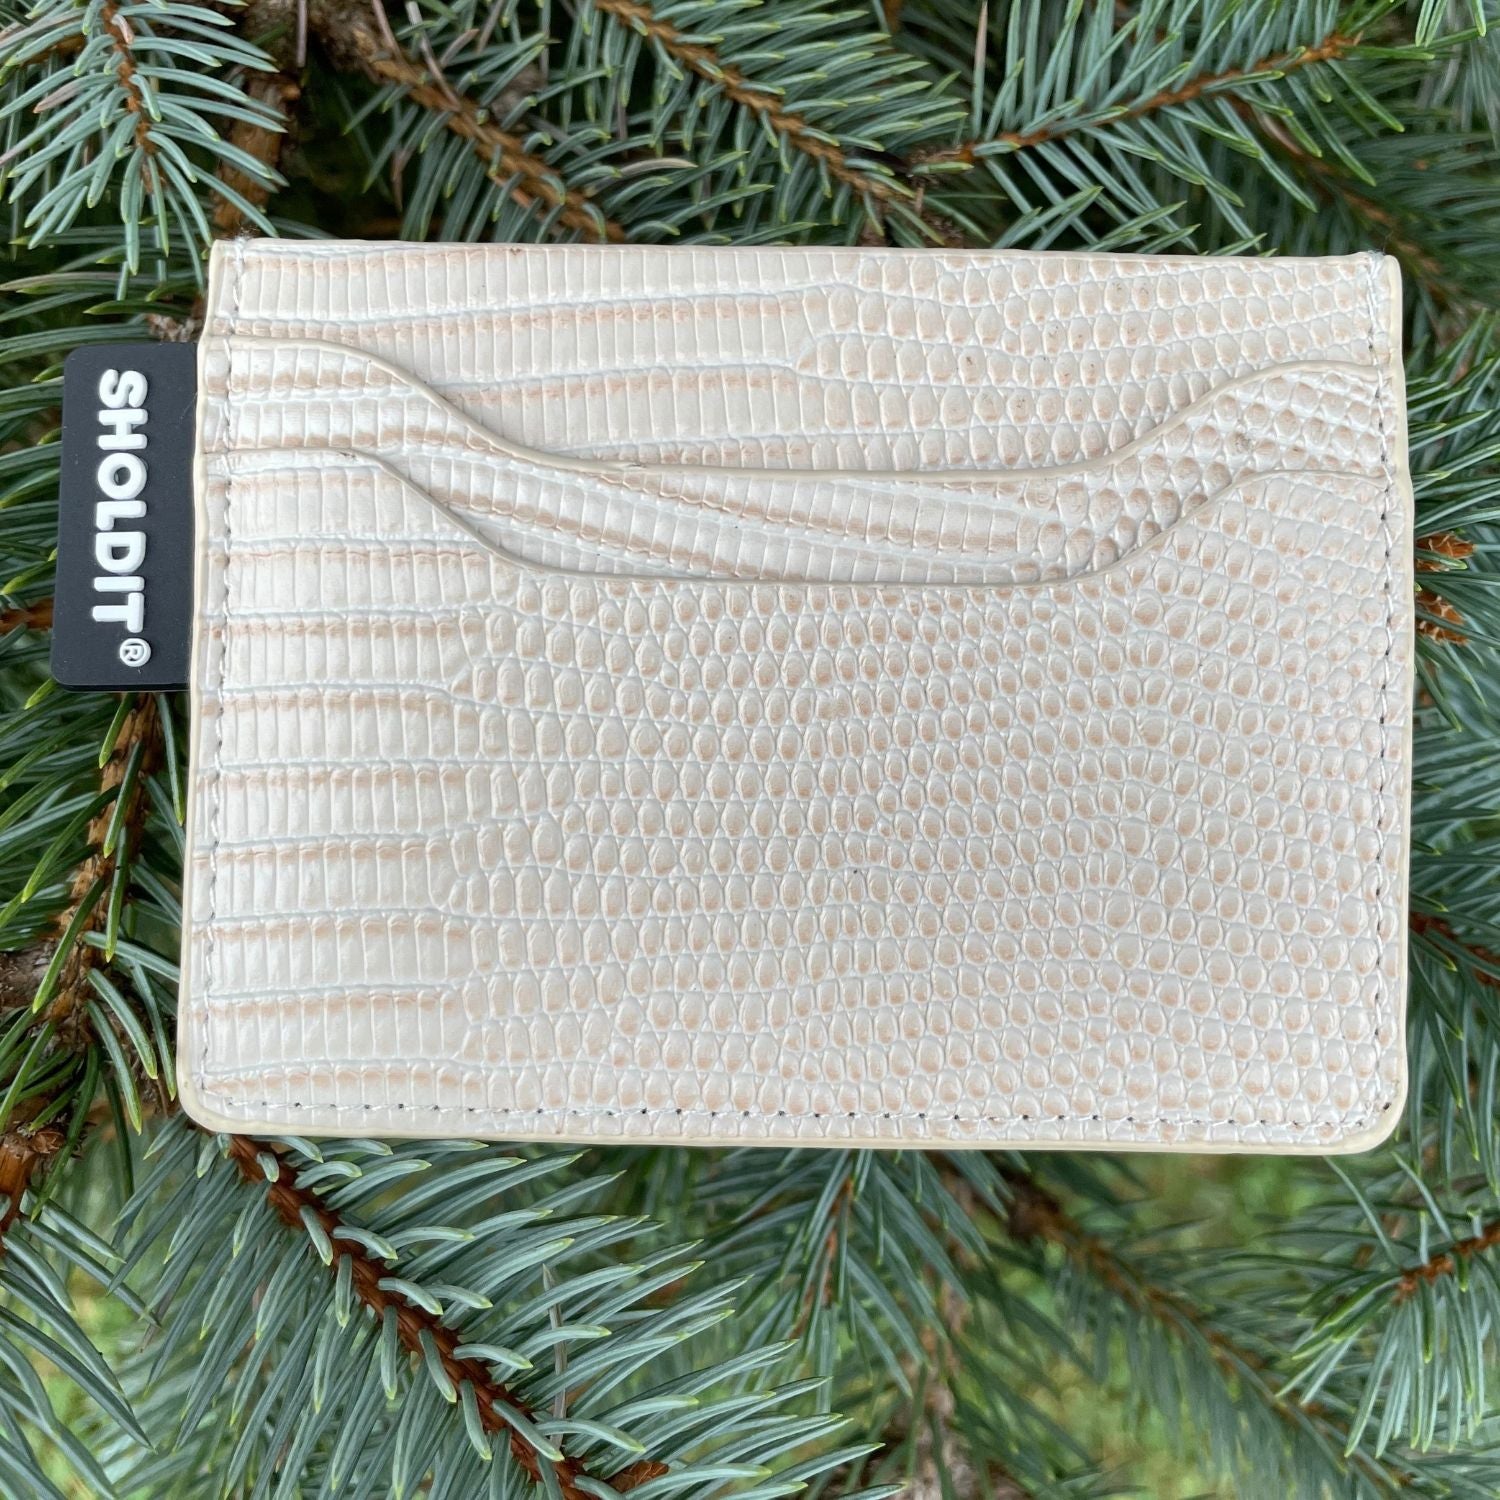 SHOLDIT card holder wallet cream